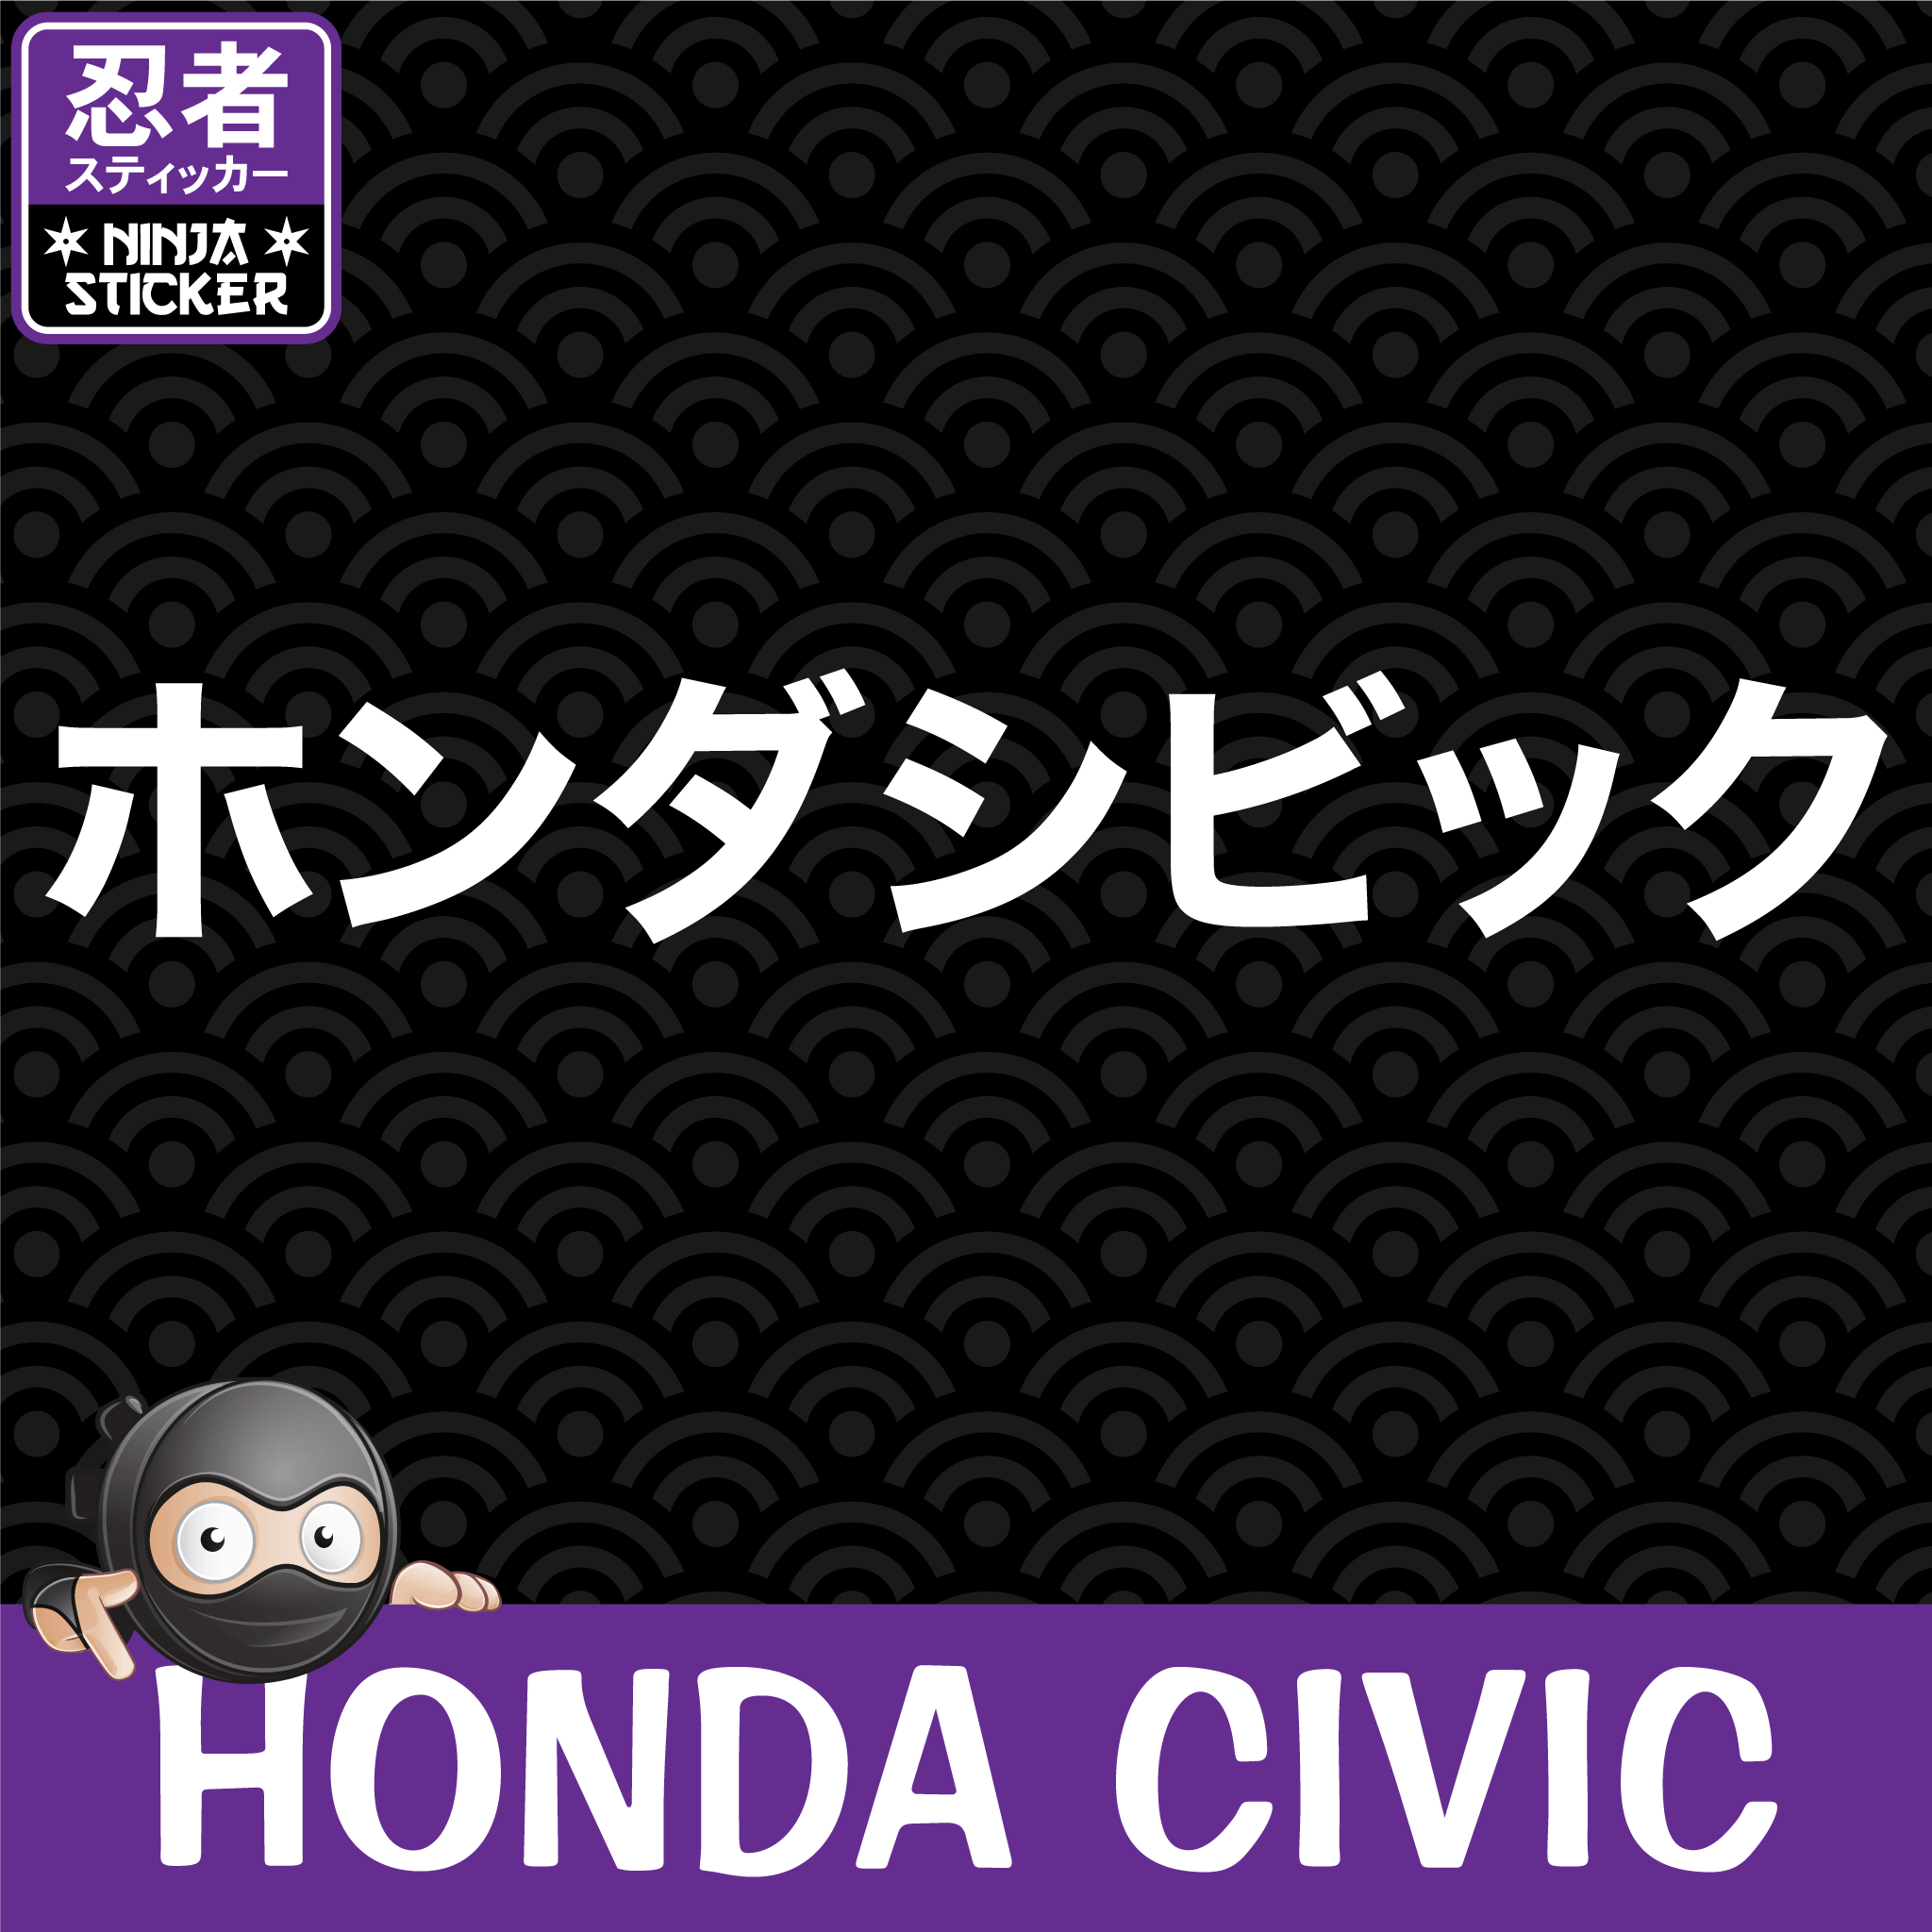 Daiki Ninomiya's Honda Civic | Initial D Wiki | Fandom